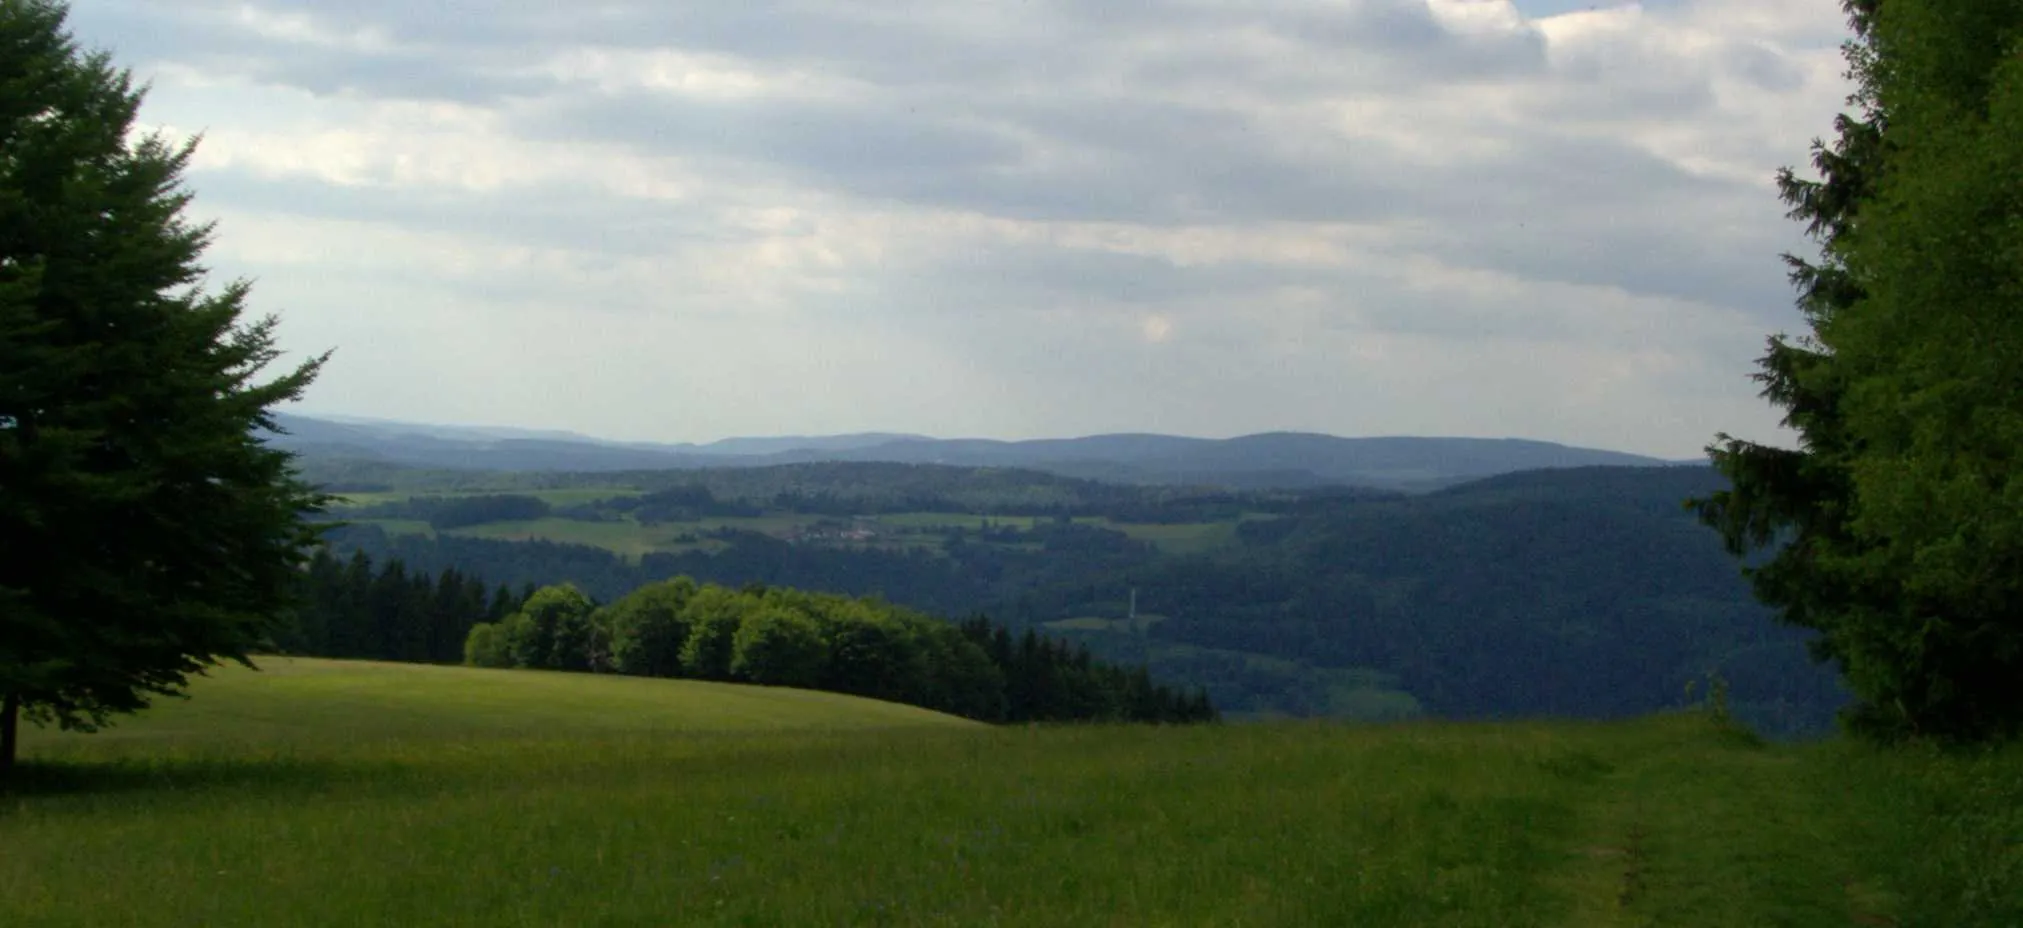 Photo showing: Blick vom Simmersberg (781 m) auf den Pleß (645 m, links der Mitte, 52 km entfernt) im Nordosten der Vorderen Rhön und den 14 km entfernten Adlersberg (849 m) mit Neuhäuser Hügel (891 m)